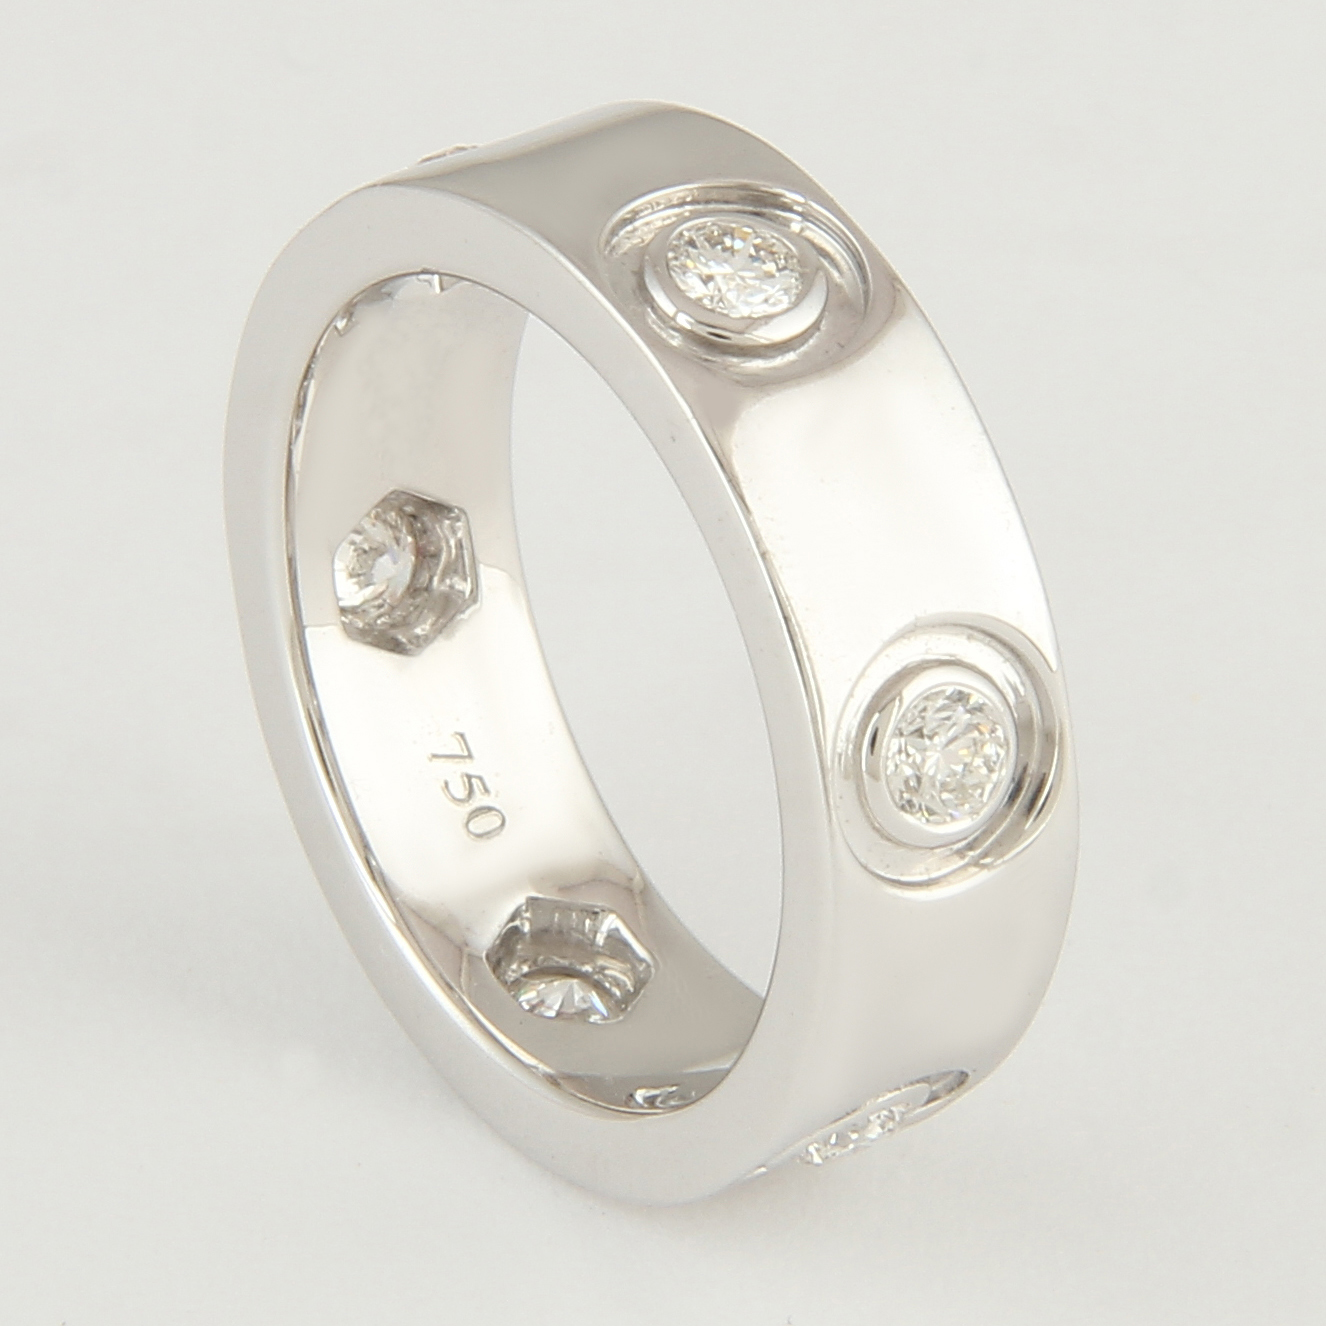 18 K / 750 White Gold Eternity Diamond Band Ring - Image 2 of 3